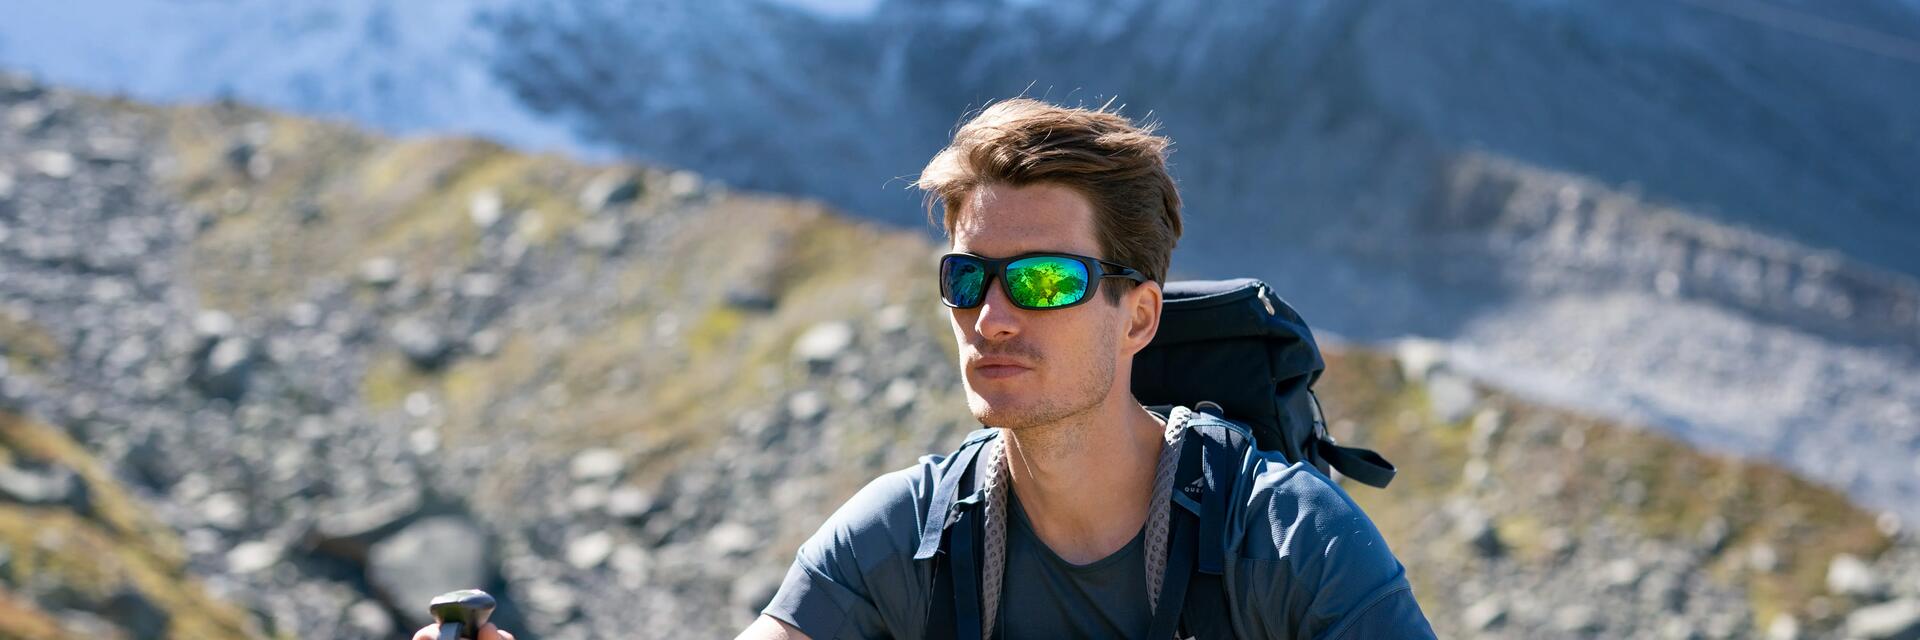 Mężczyzna wędrujący szlakiem górskim w okularach przeciwsłonecznych w góry z plecakiem turystycznym na plecach